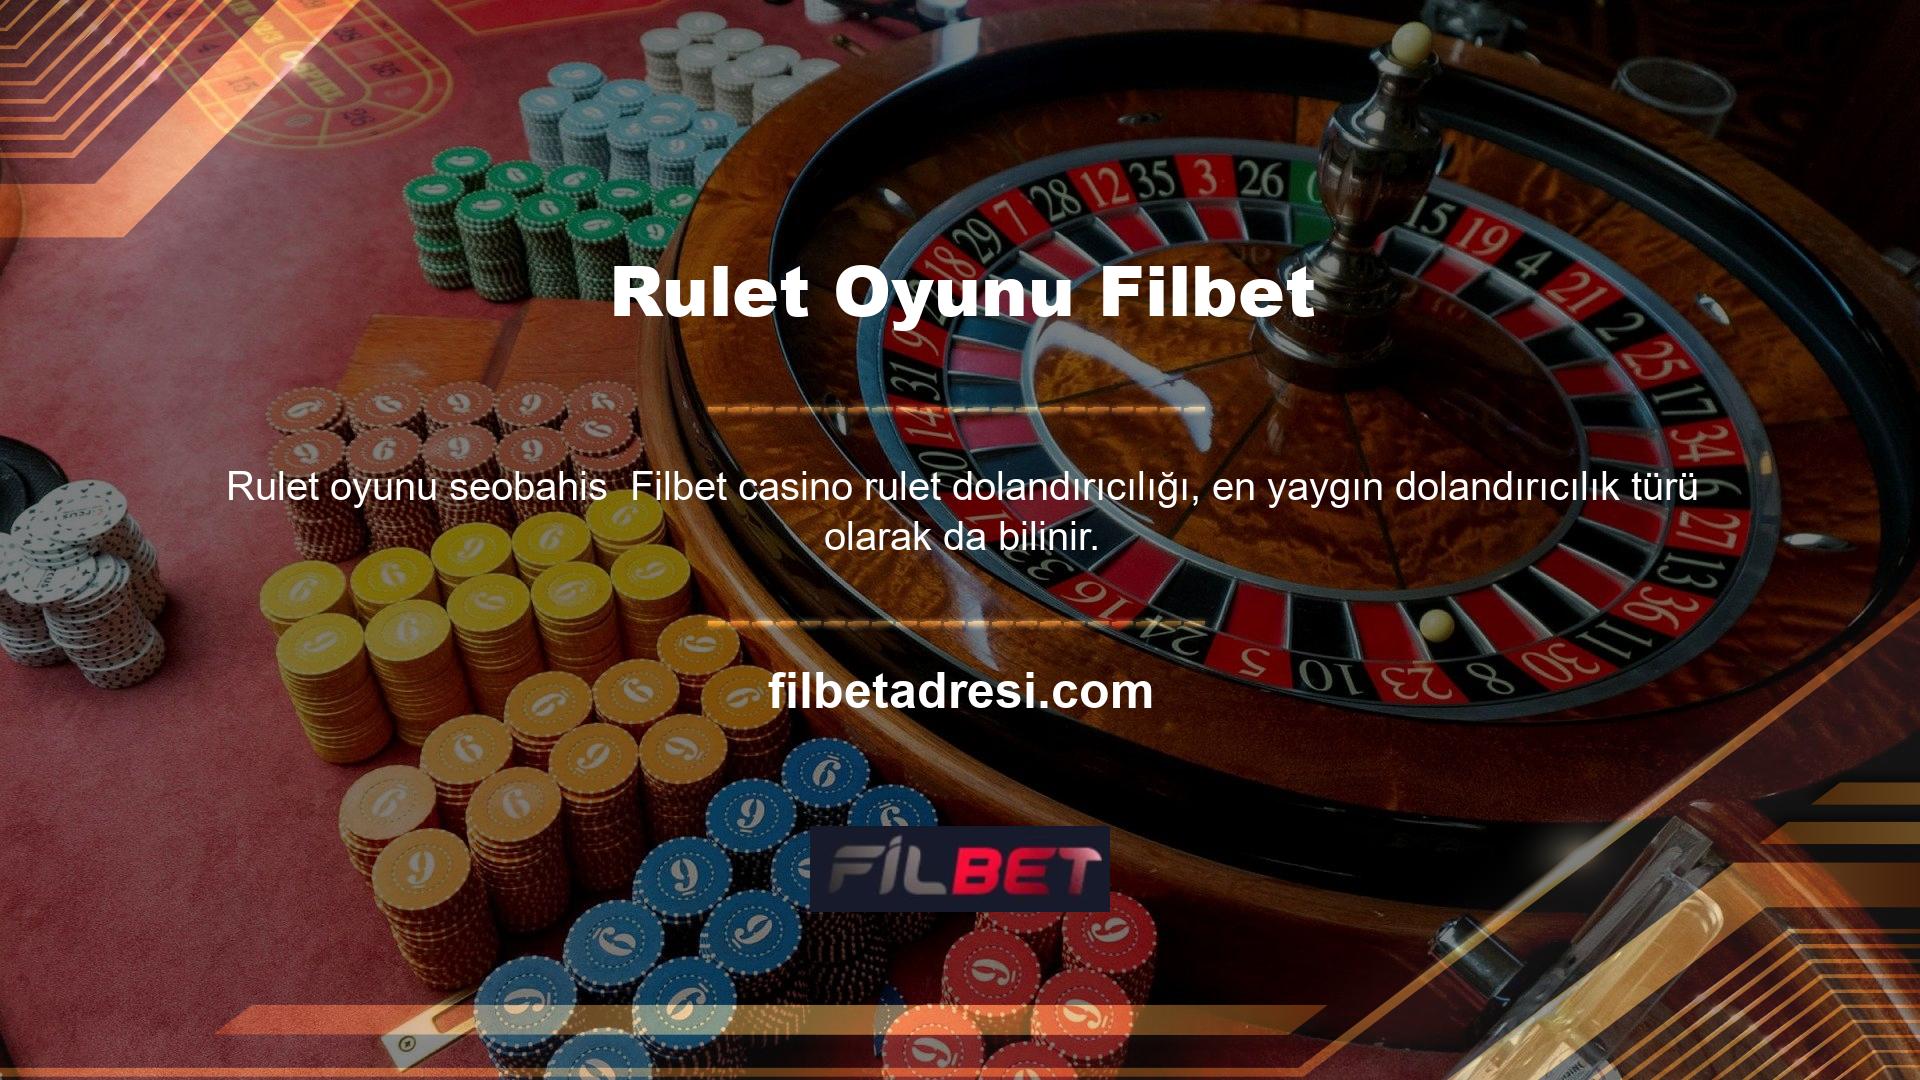 Bir rulet casinoda daha fazla para kazanmak istiyorsanız, her zaman önce aynı bütçeyle aynı rengi oynamalısınız